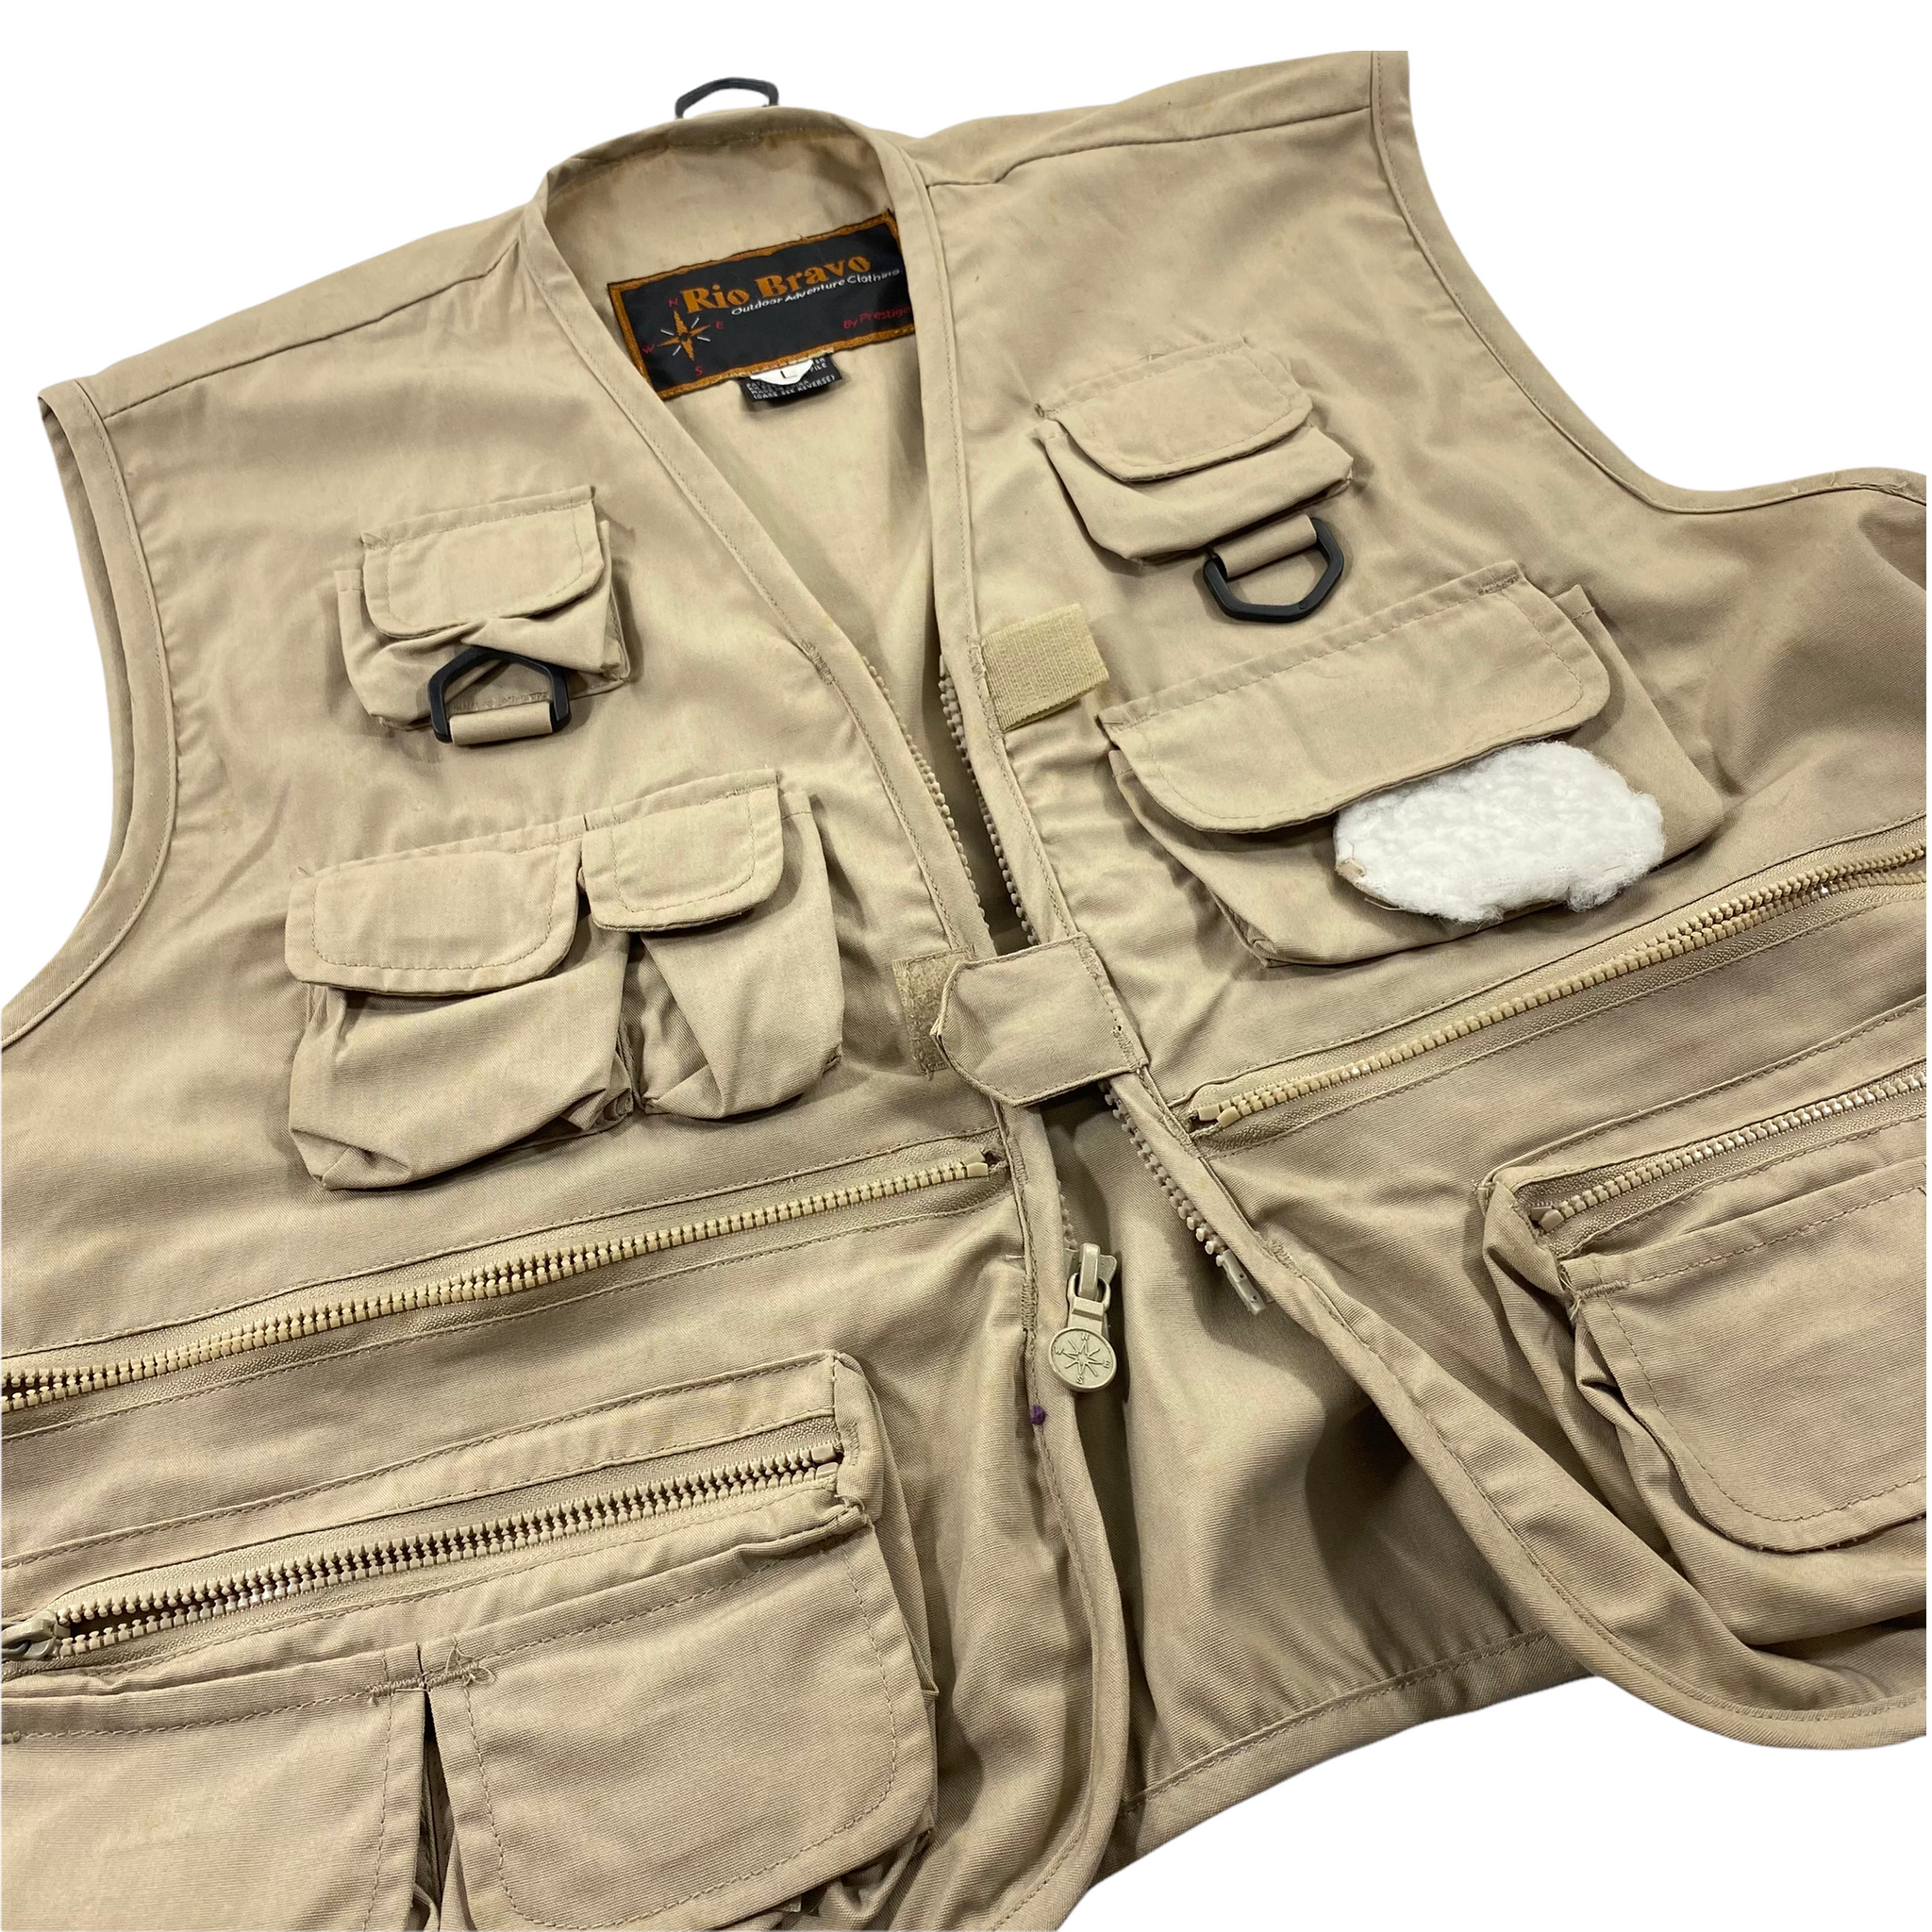 Vintage fishing vest medium